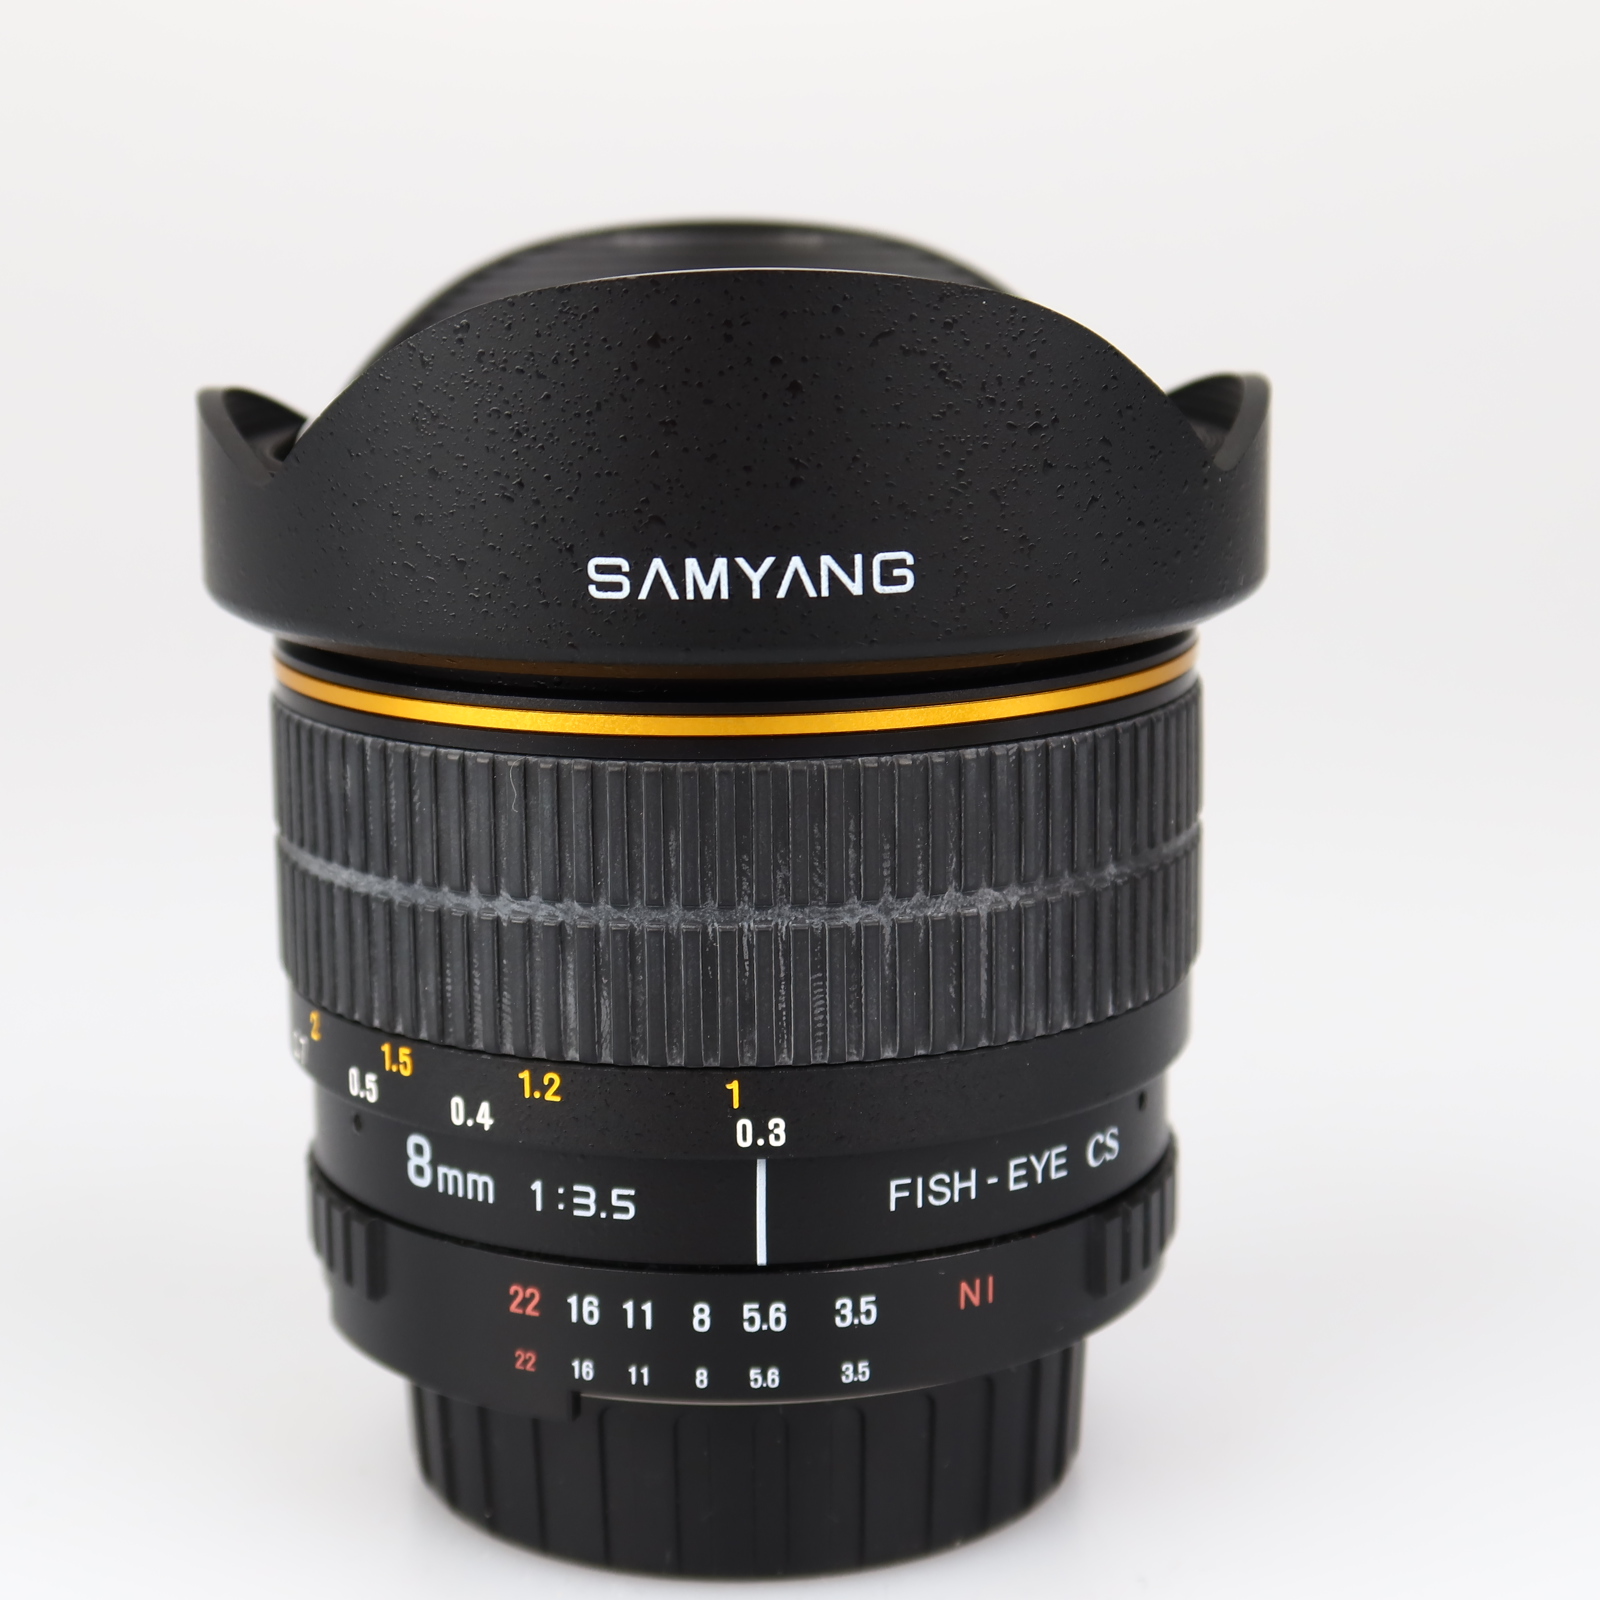 (Myyty) Samyang 8mm f/3.5 Fish-Eye CS (Nikon) (käytetty)